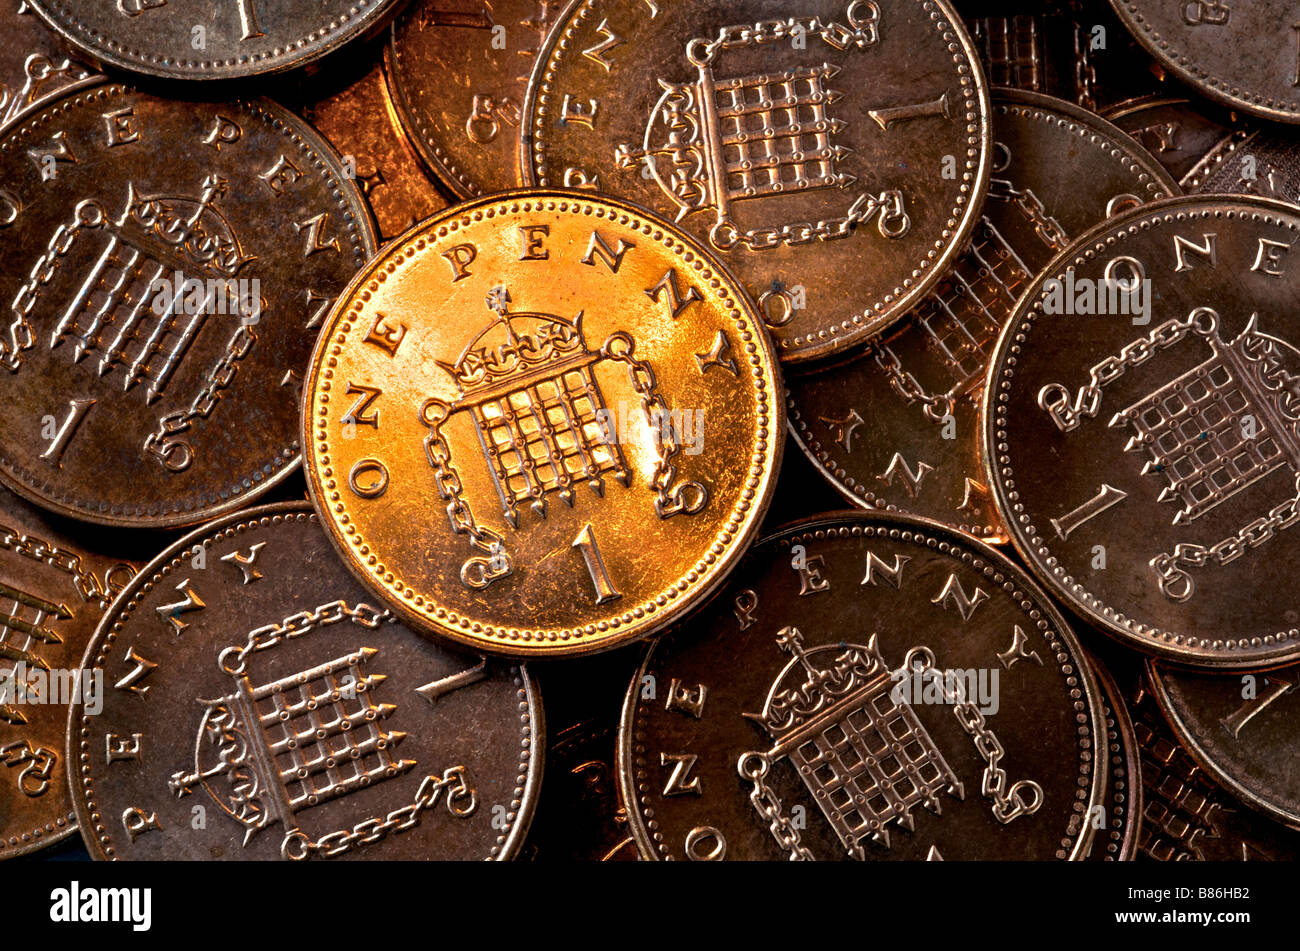 Las monedas de un centavo británico Foto de stock